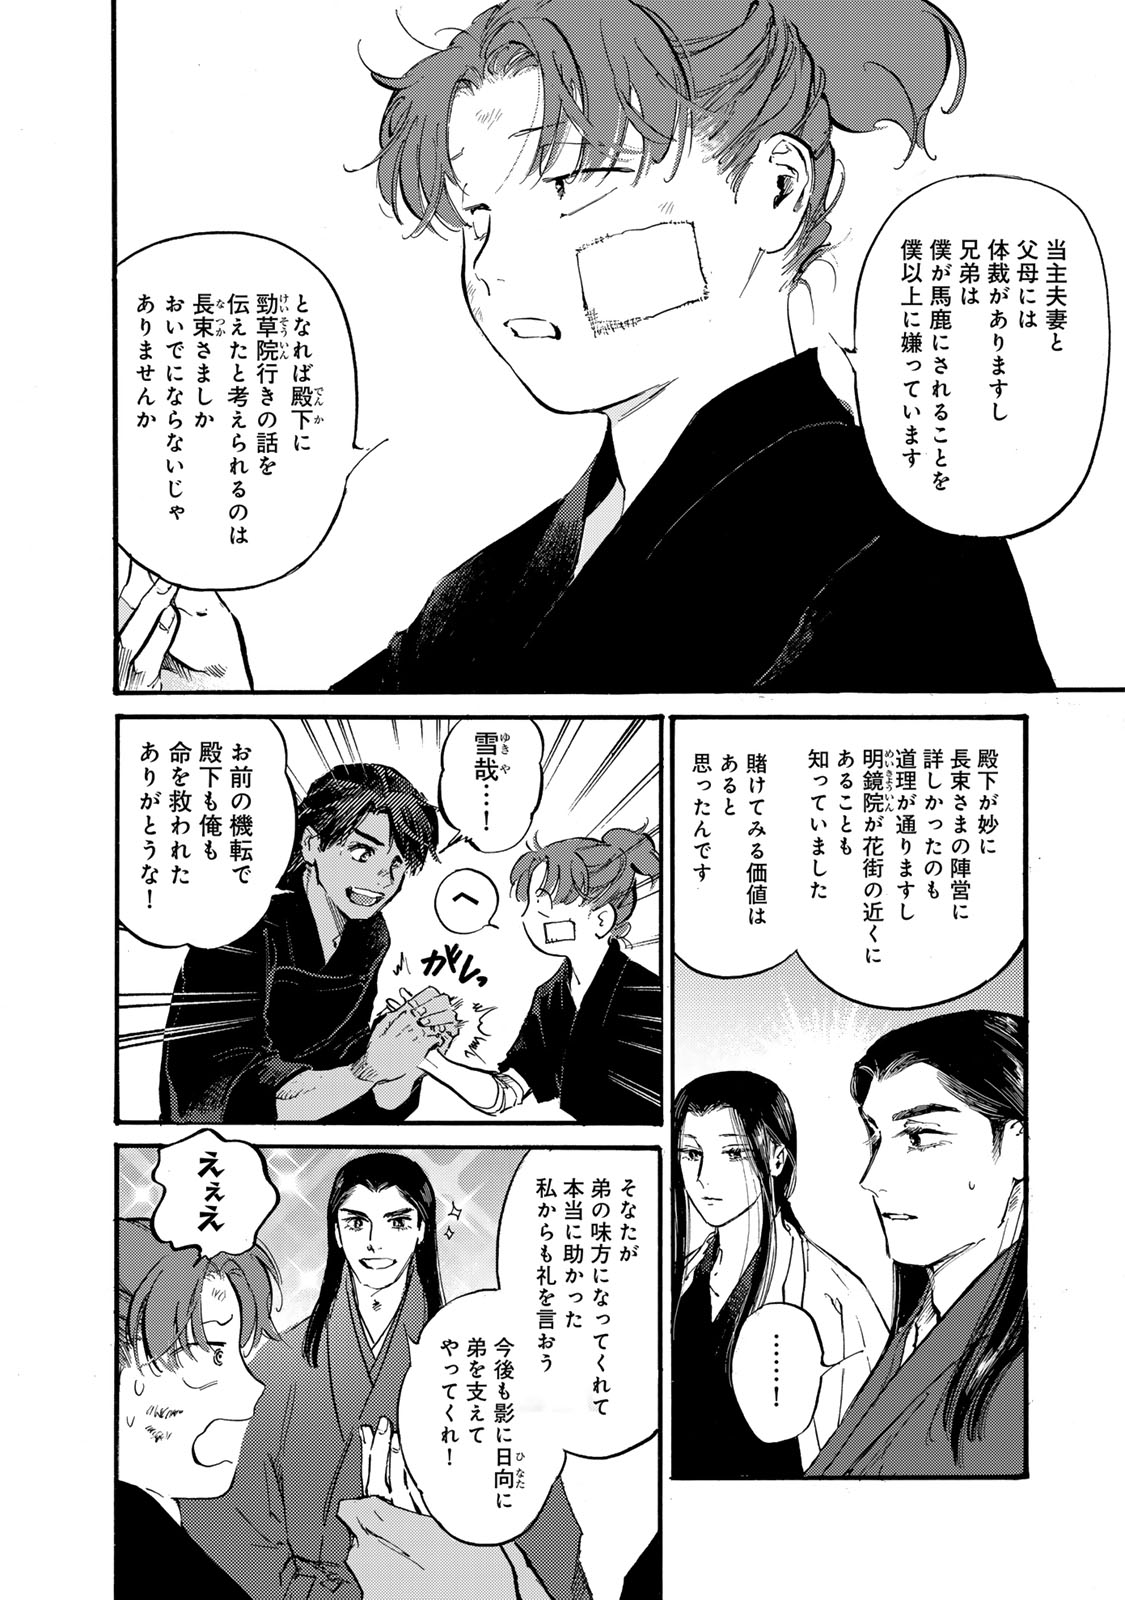 Karasu wa Aruji wo Erabanai - Chapter 43 - Page 16